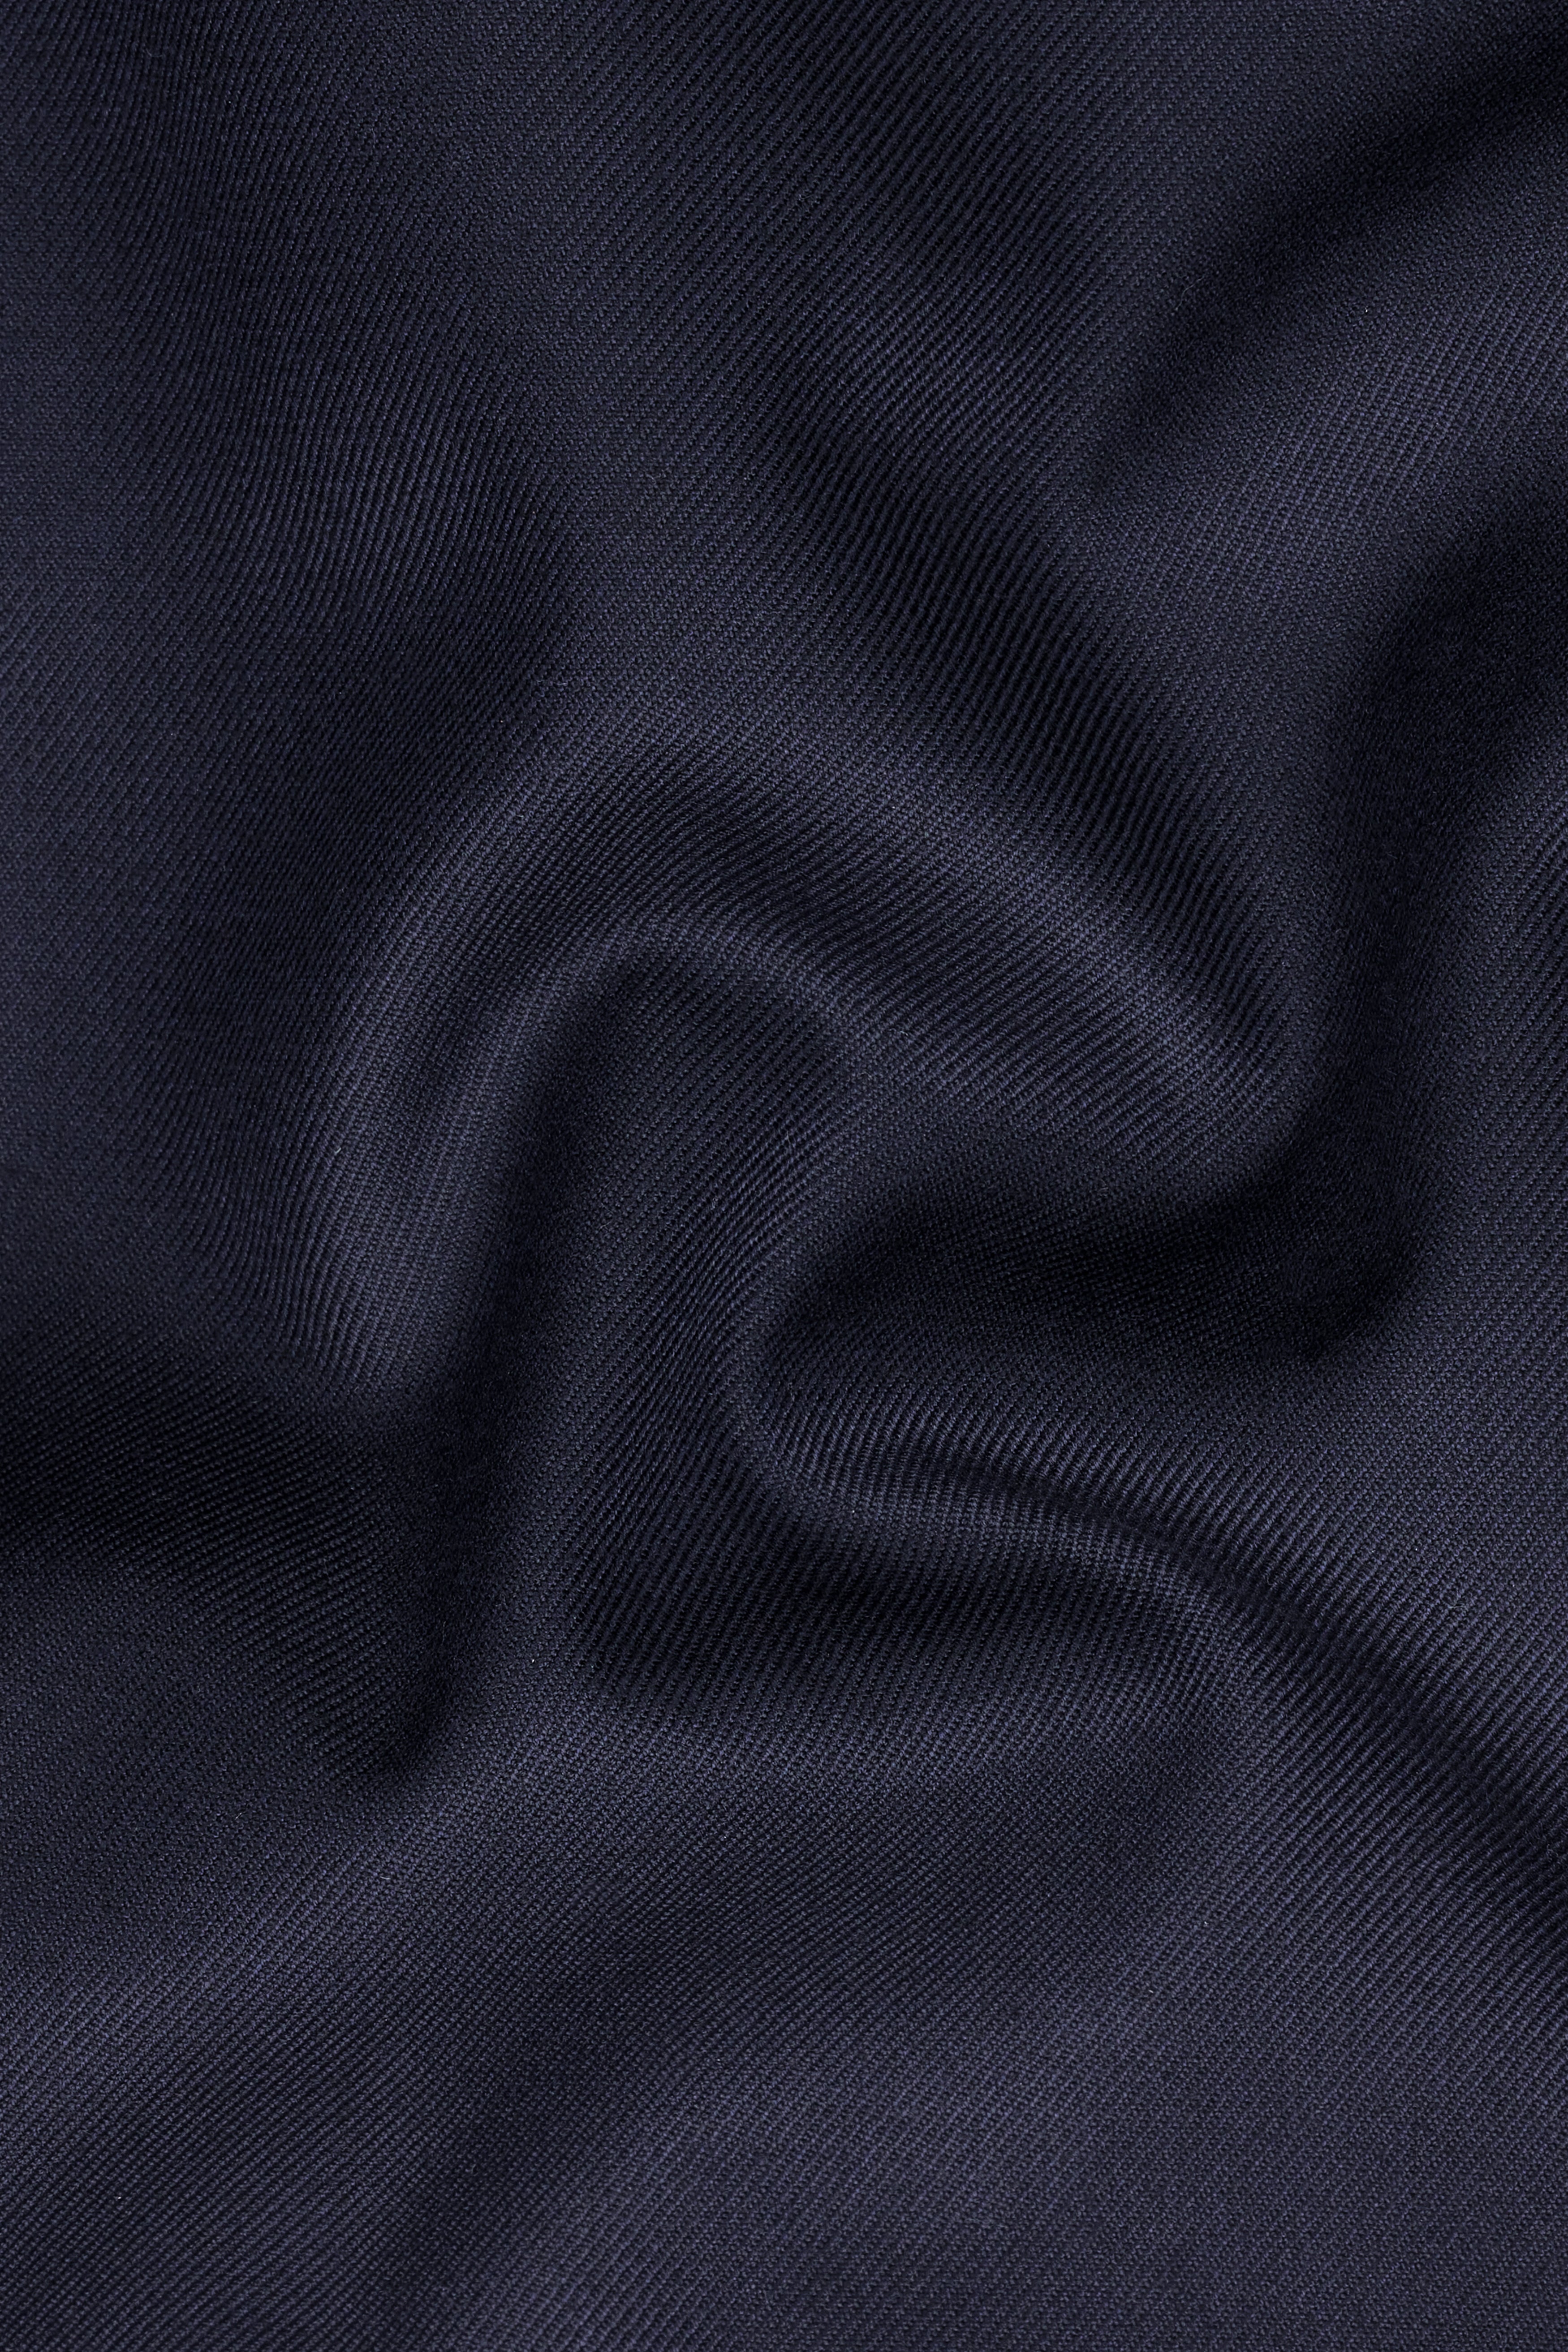 Mirage Blue Wool Rich  Waistcoat V2727-36, V2727-38, V2727-40, V2727-42, V2727-44, V2727-46, V2727-48, V2727-50, V2727-52, V2727-54, V2727-56, V2727-58, V2727-60